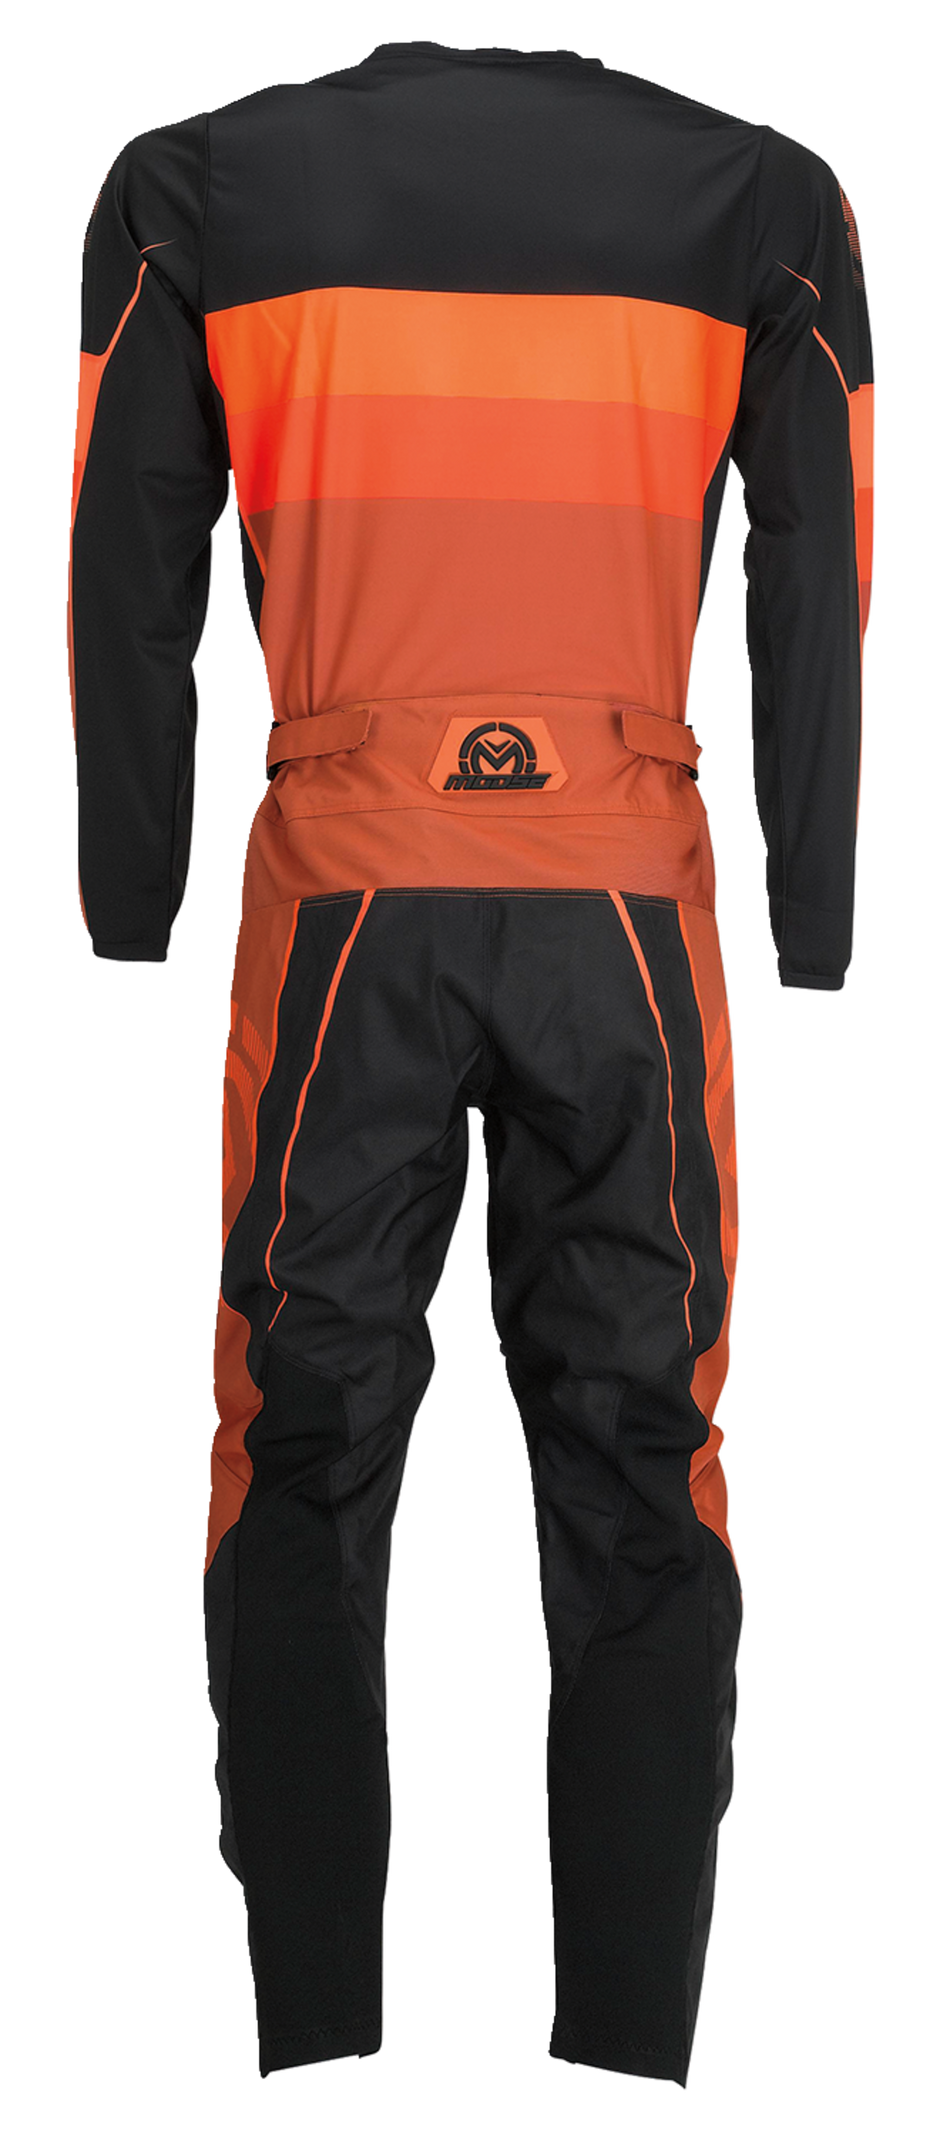 Camiseta MOOSE RACING Qualifier® - Naranja/Gris - 2XL 2910-7200 